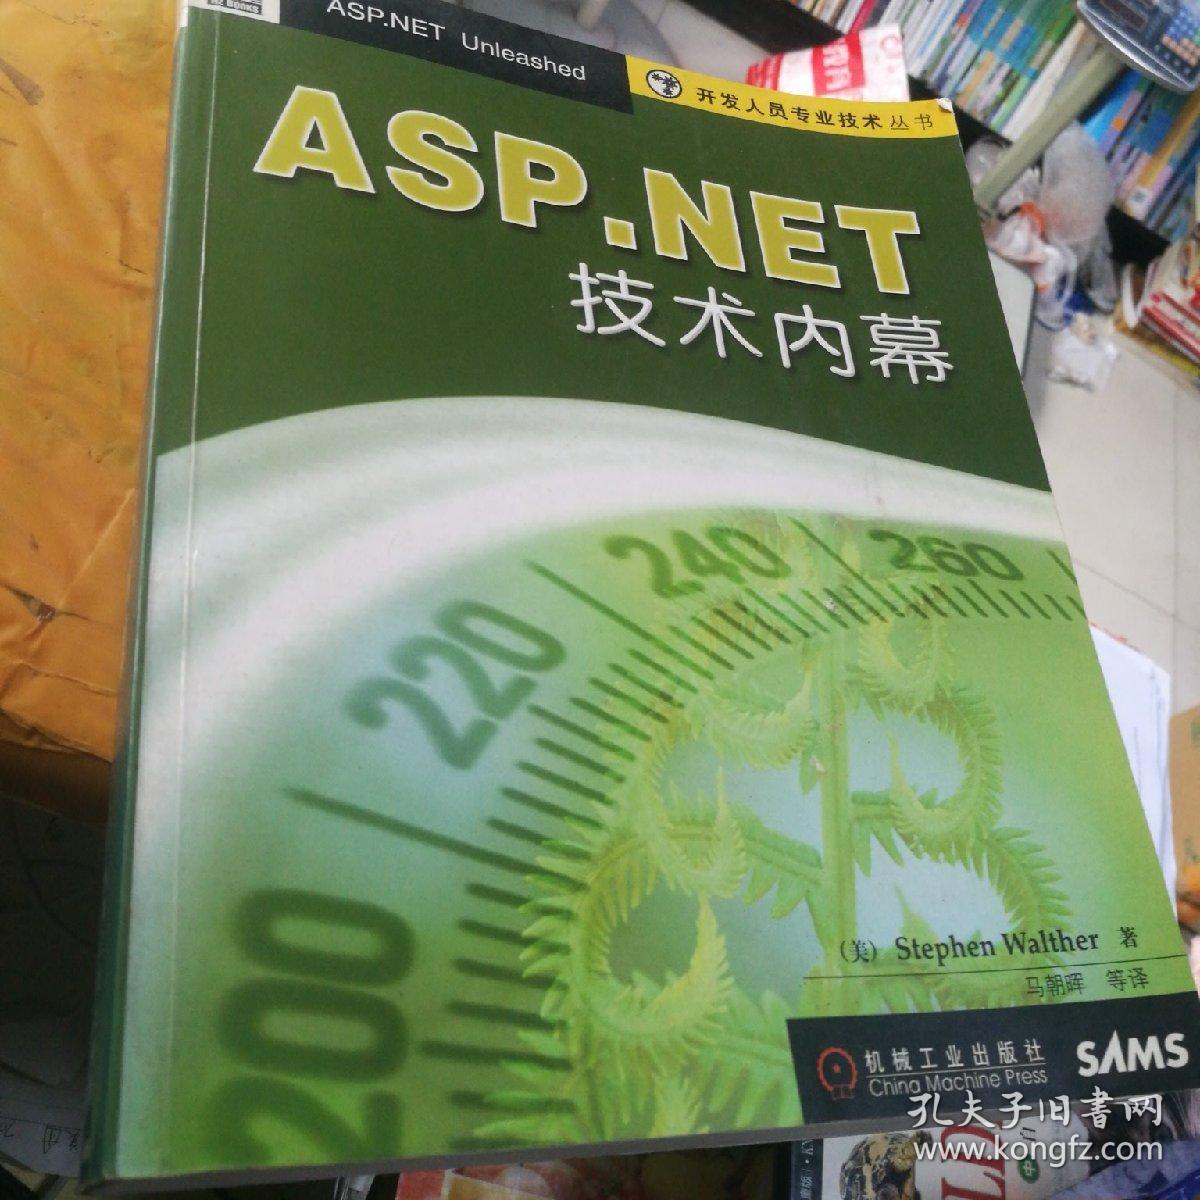 ASP.NET技术内幕